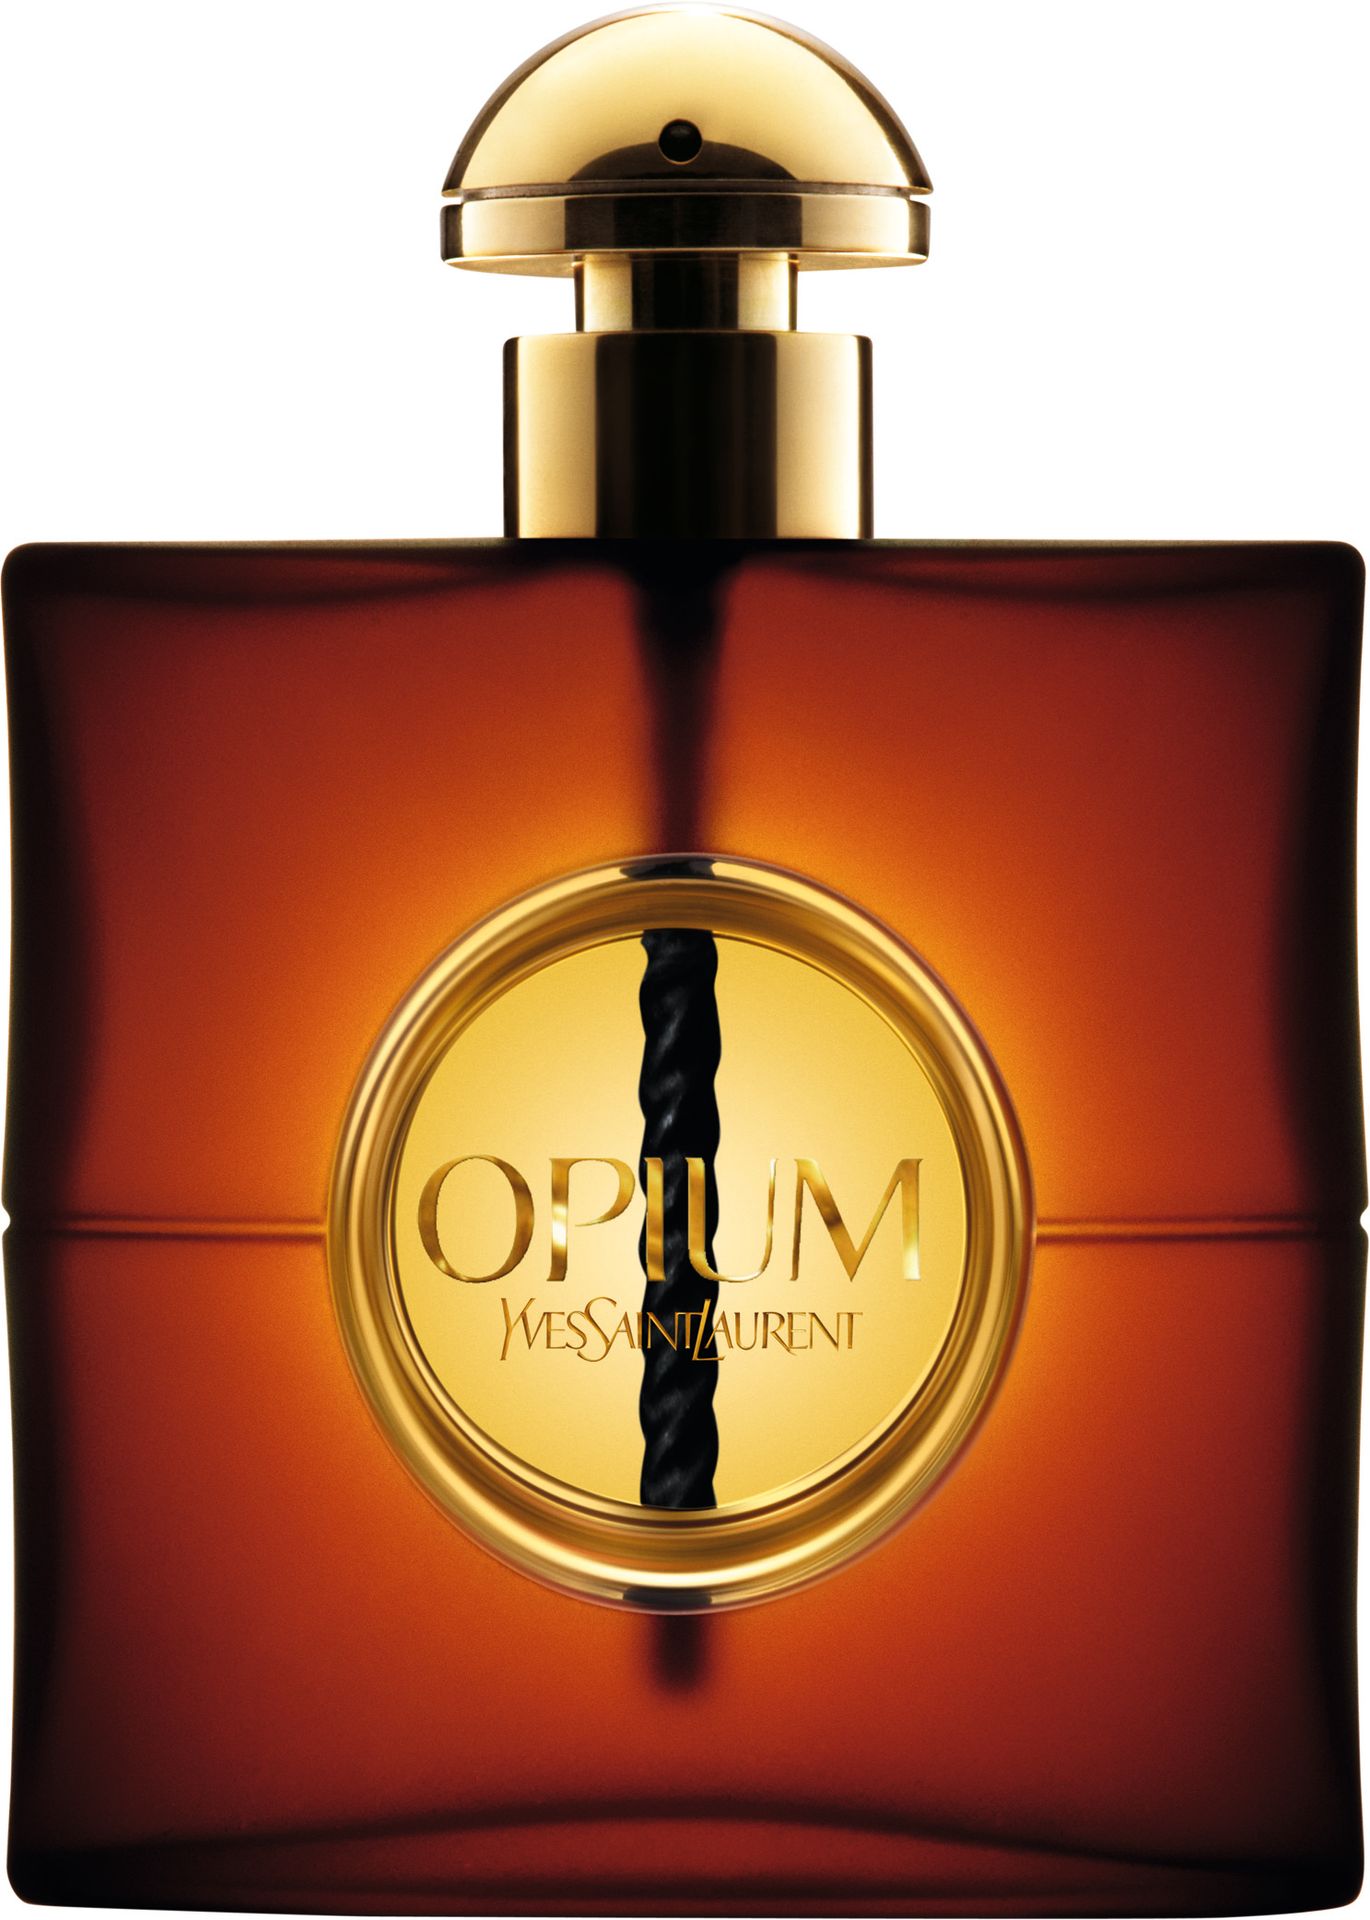 Yves Saint Laurent Opium woda perfumowana 30ml